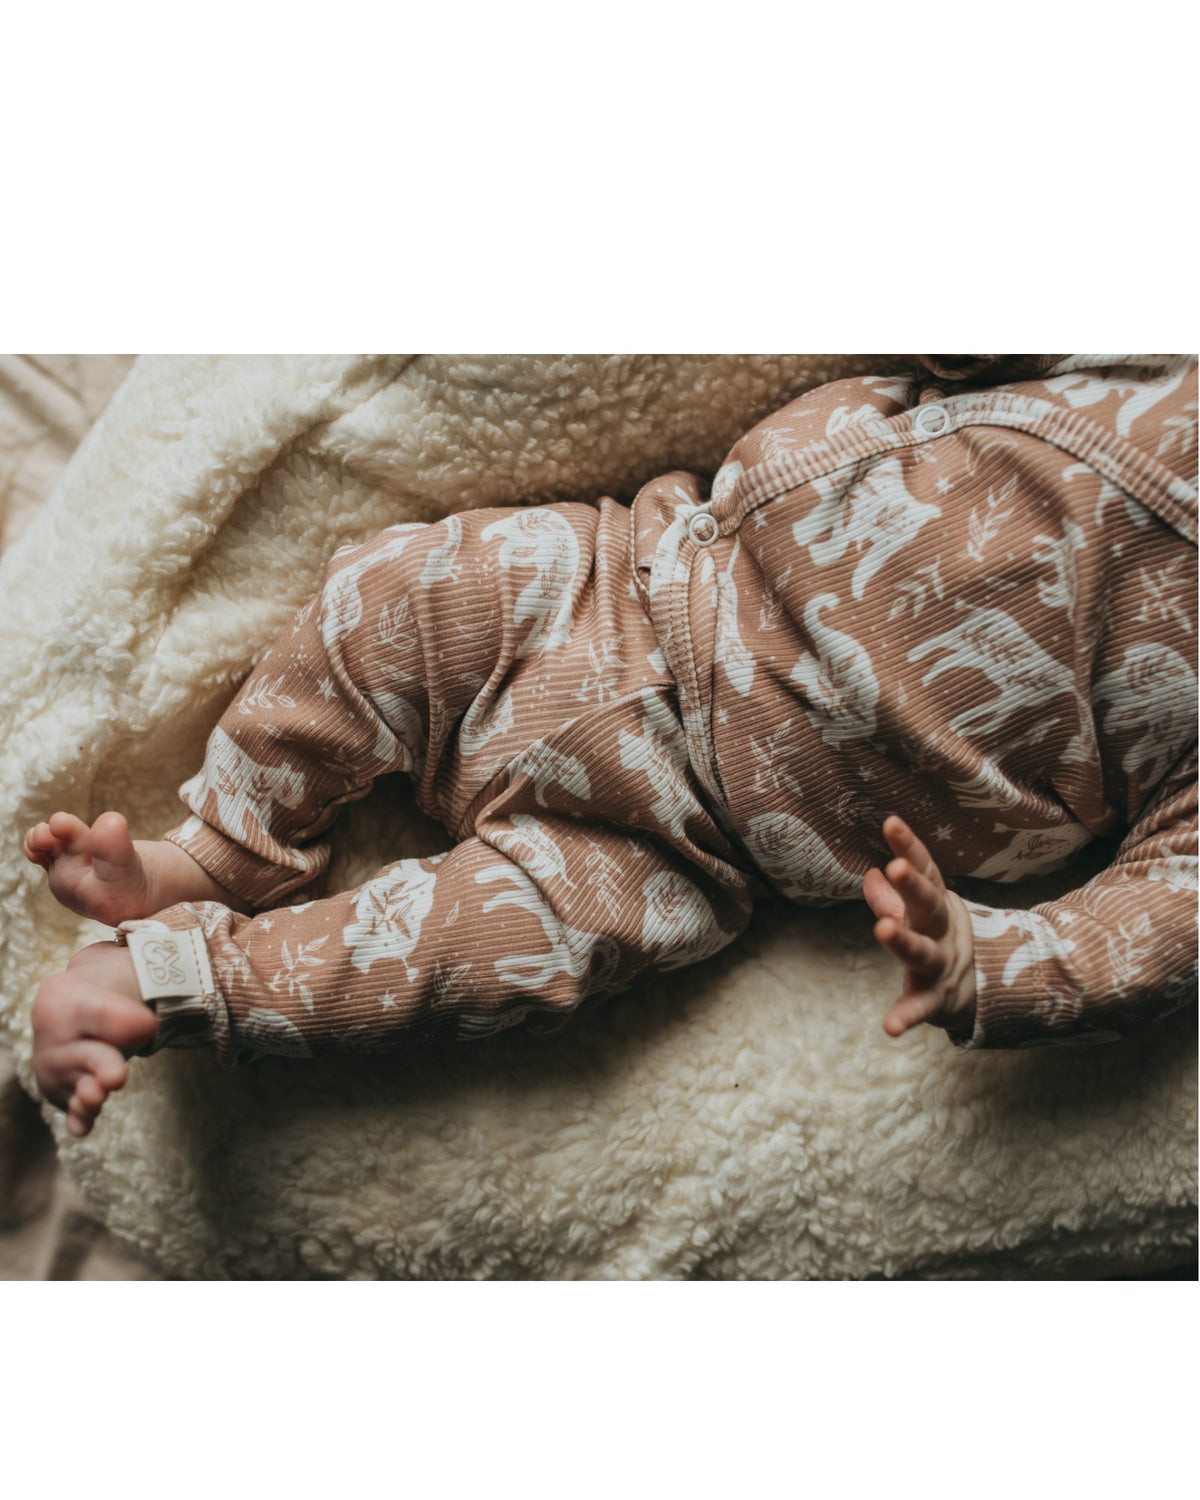 Een serene pasgeboren baby gekleed in een Yumi Baby Broekje Boho Jungle onesie gemaakt van OEKO-TEX gecertificeerd katoen en een bijpassend mutsje, vredig slapend in een knus rieten mandje gevoerd met een zachte, crèmekleurige deken.